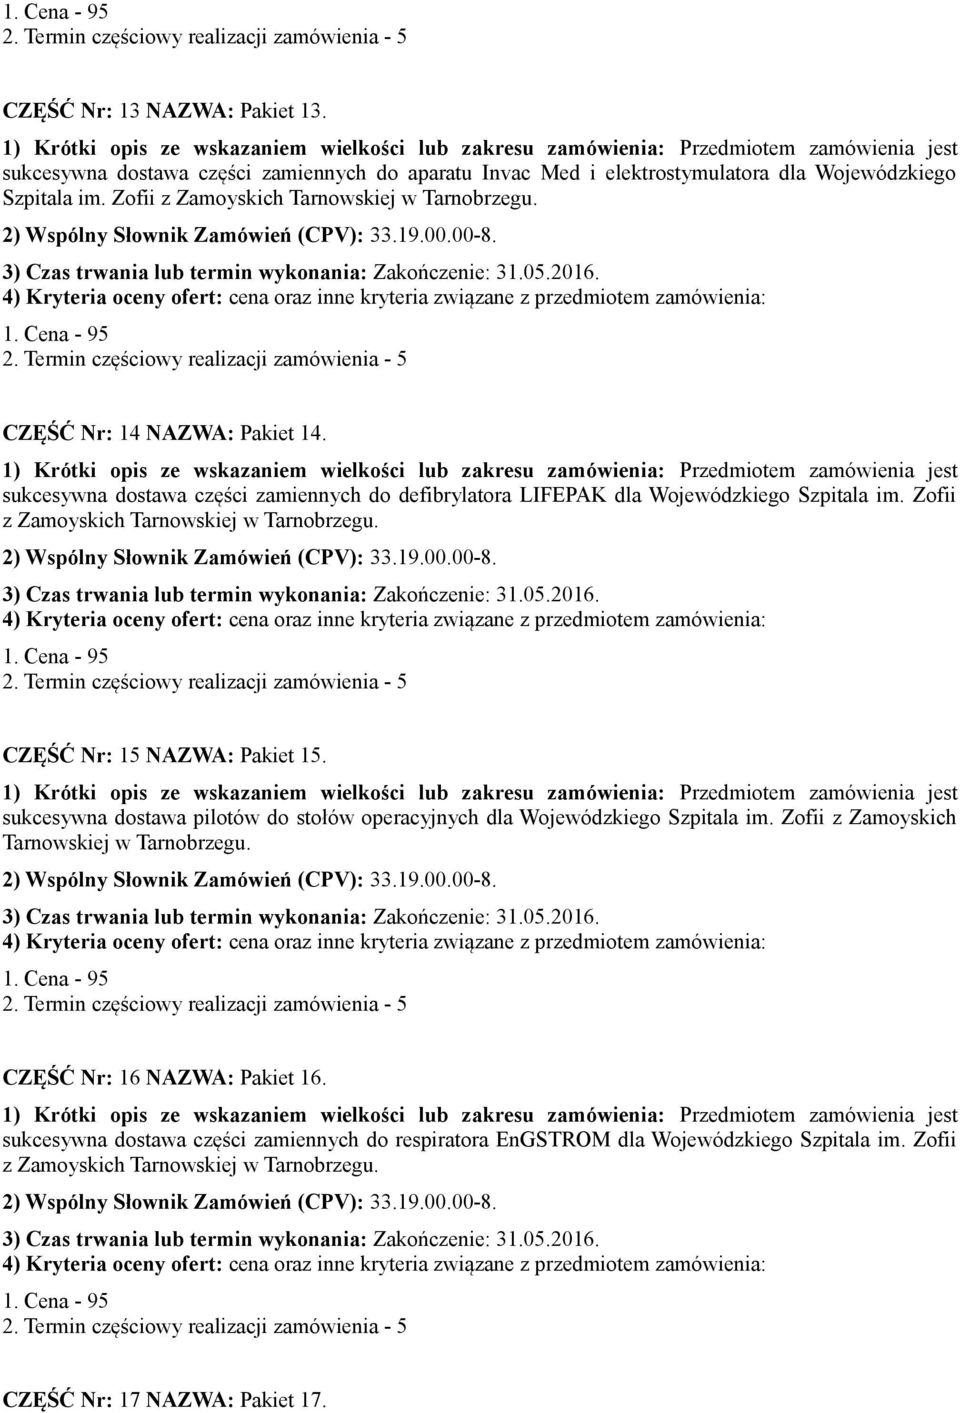 Zofii CZĘŚĆ Nr: 15 NAZWA: Pakiet 15. sukcesywna dostawa pilotów do stołów operacyjnych dla Wojewódzkiego Szpitala im.